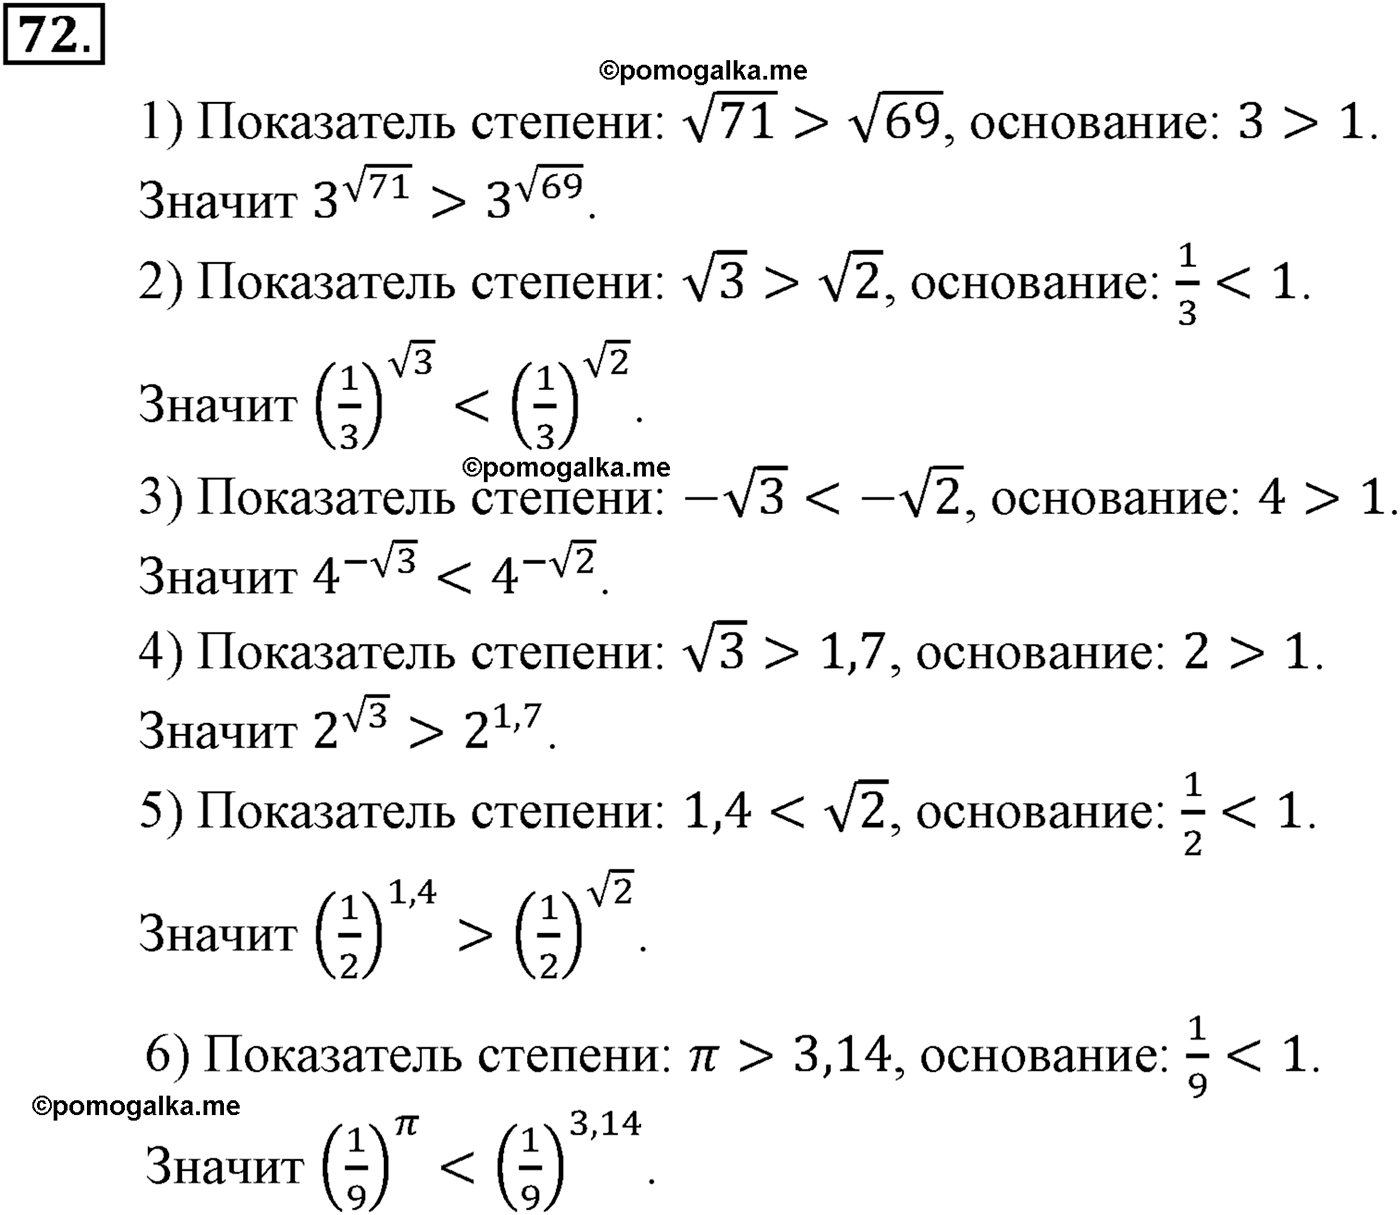 разбор задачи №72 по алгебре за 10-11 класс из учебника Алимова, Колягина